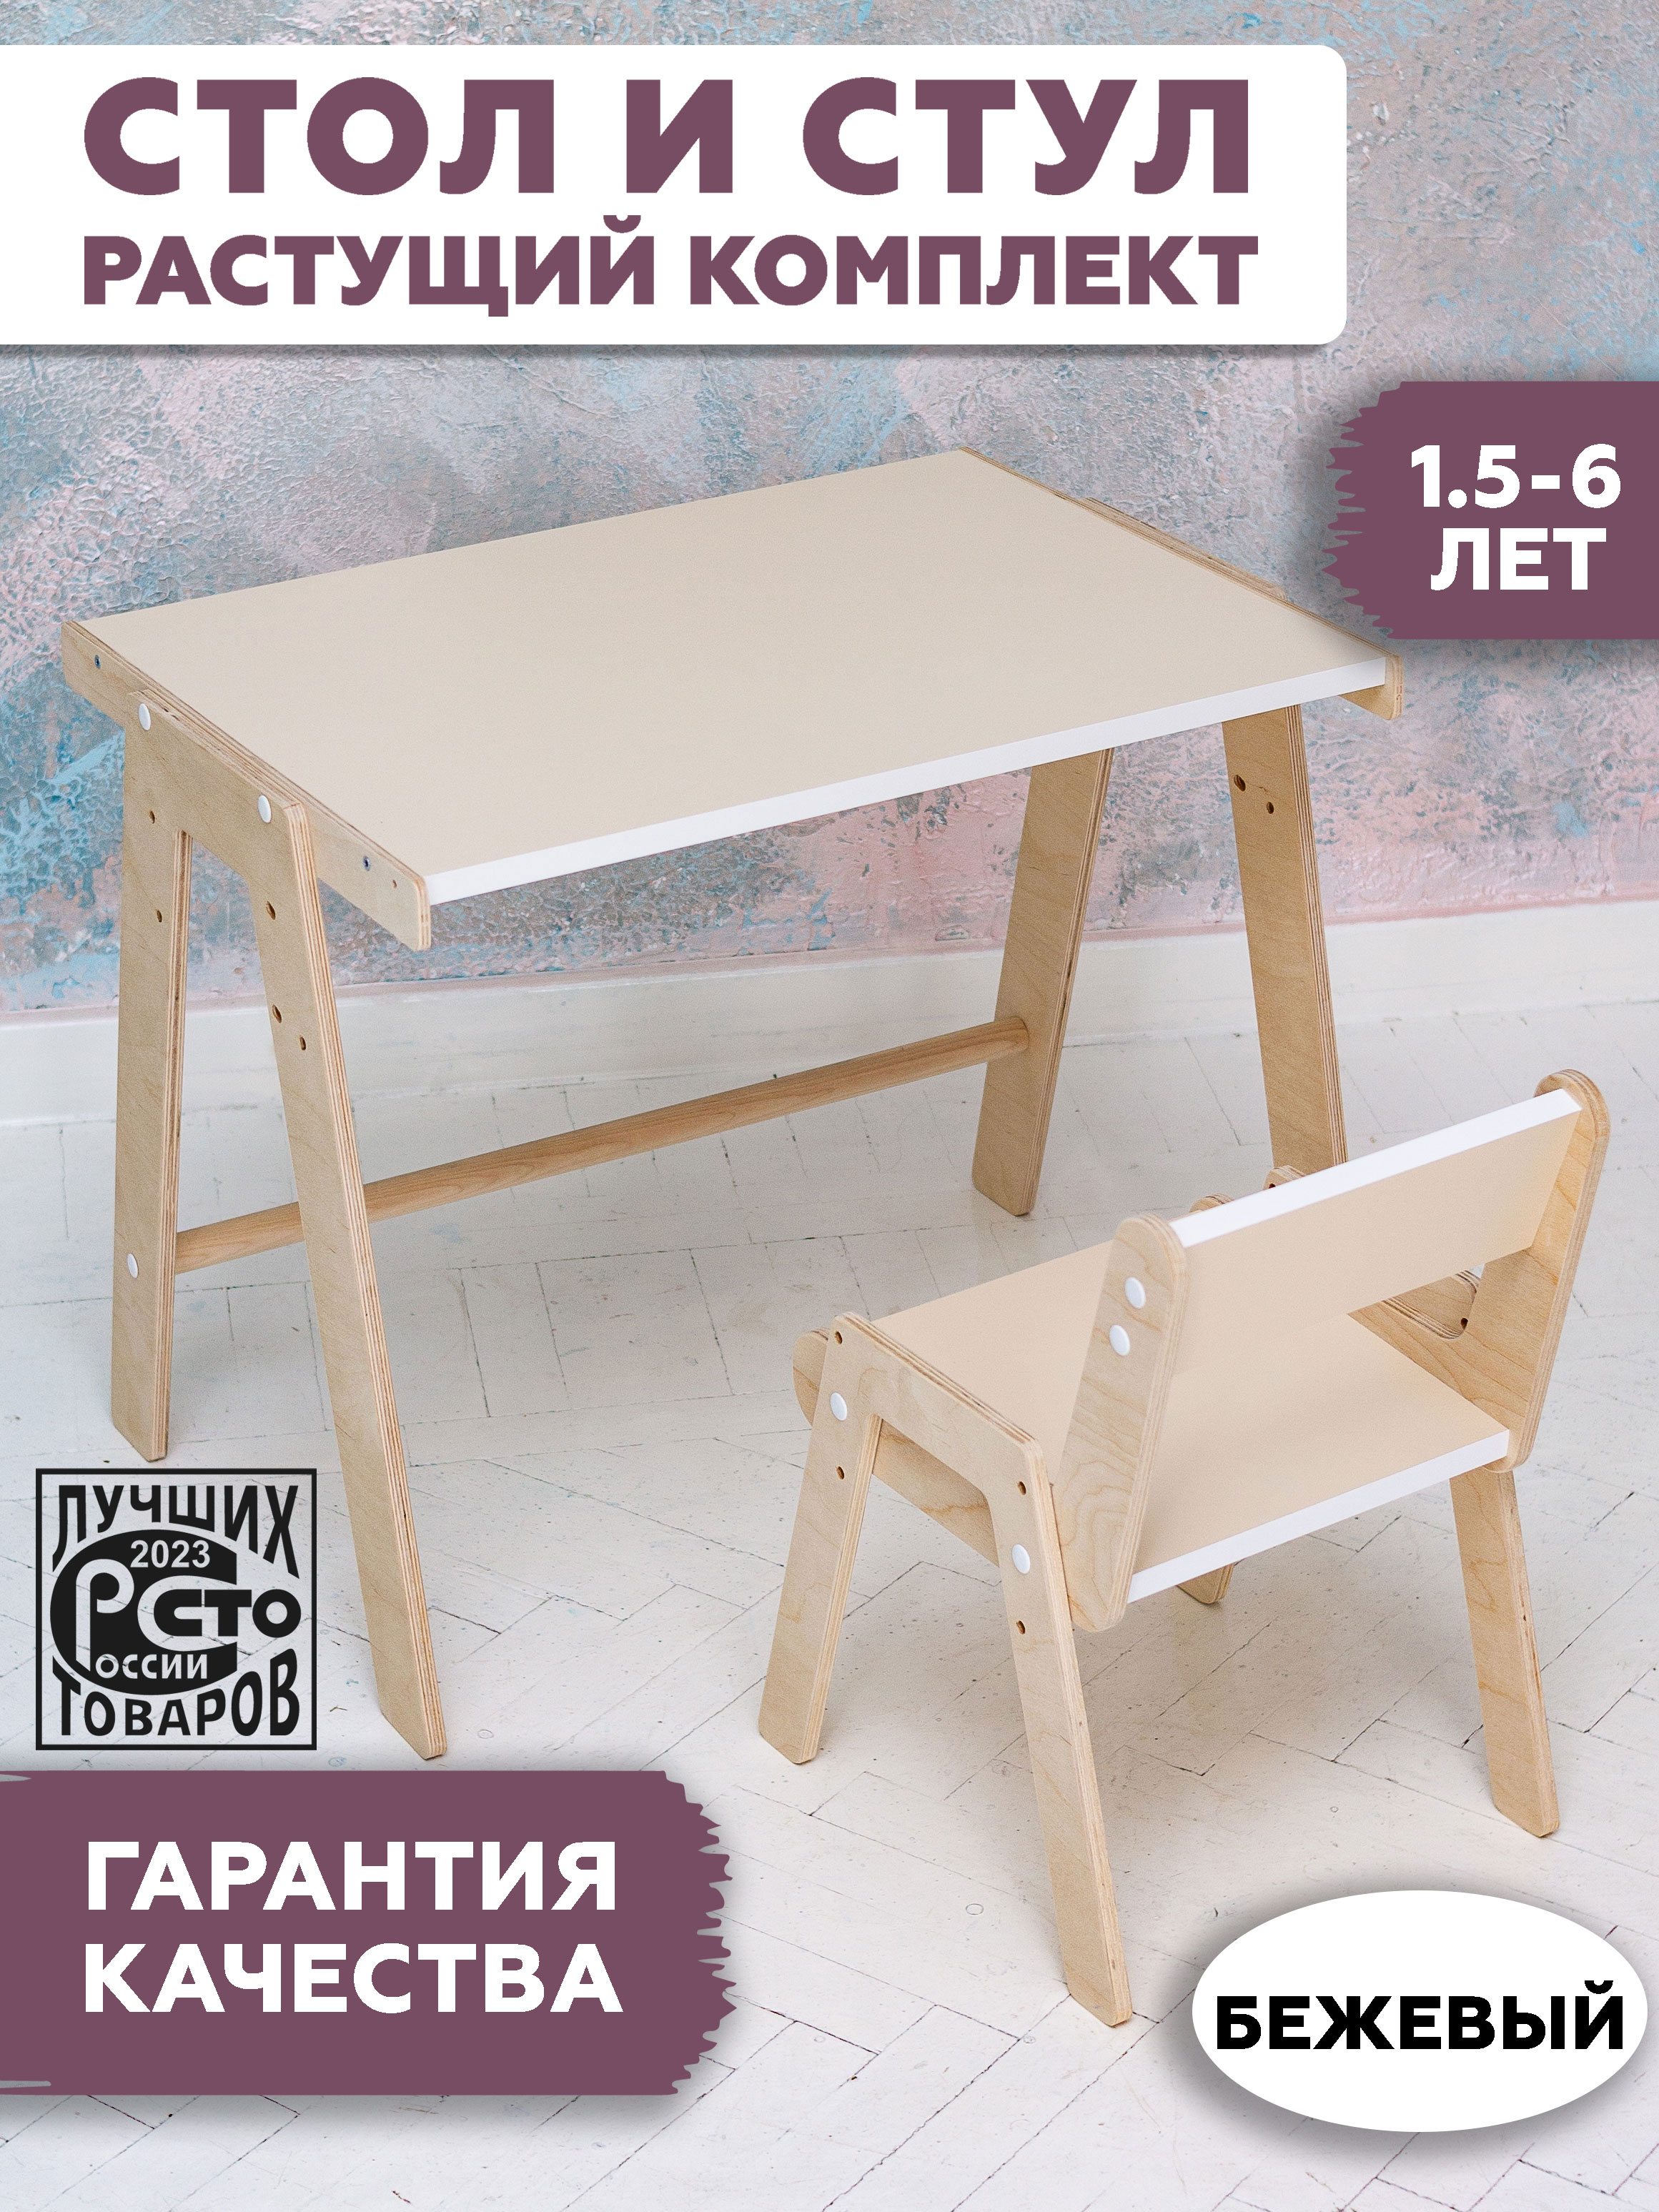 Комплект детской мебели RuLes, стол растущий и стул растущий бежевый